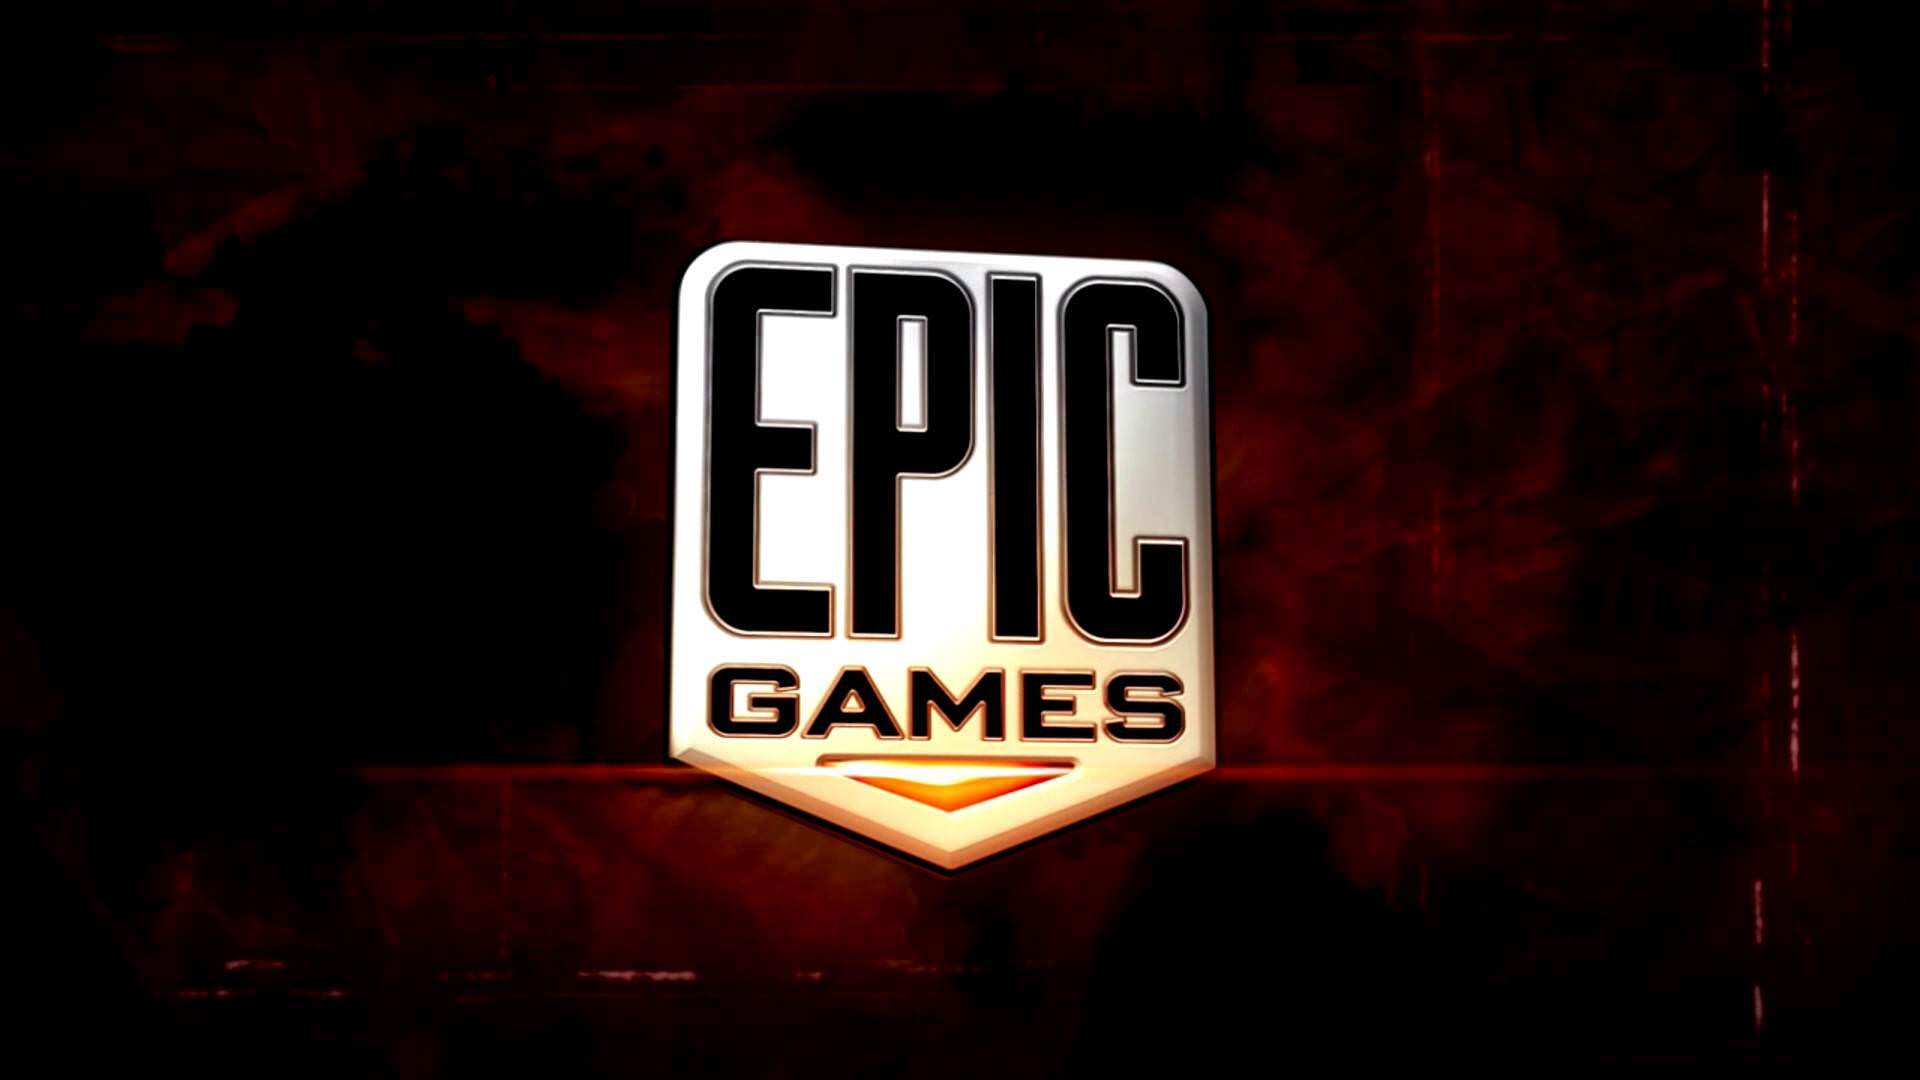 epic games bedava oyun modartpc - ModArt PC